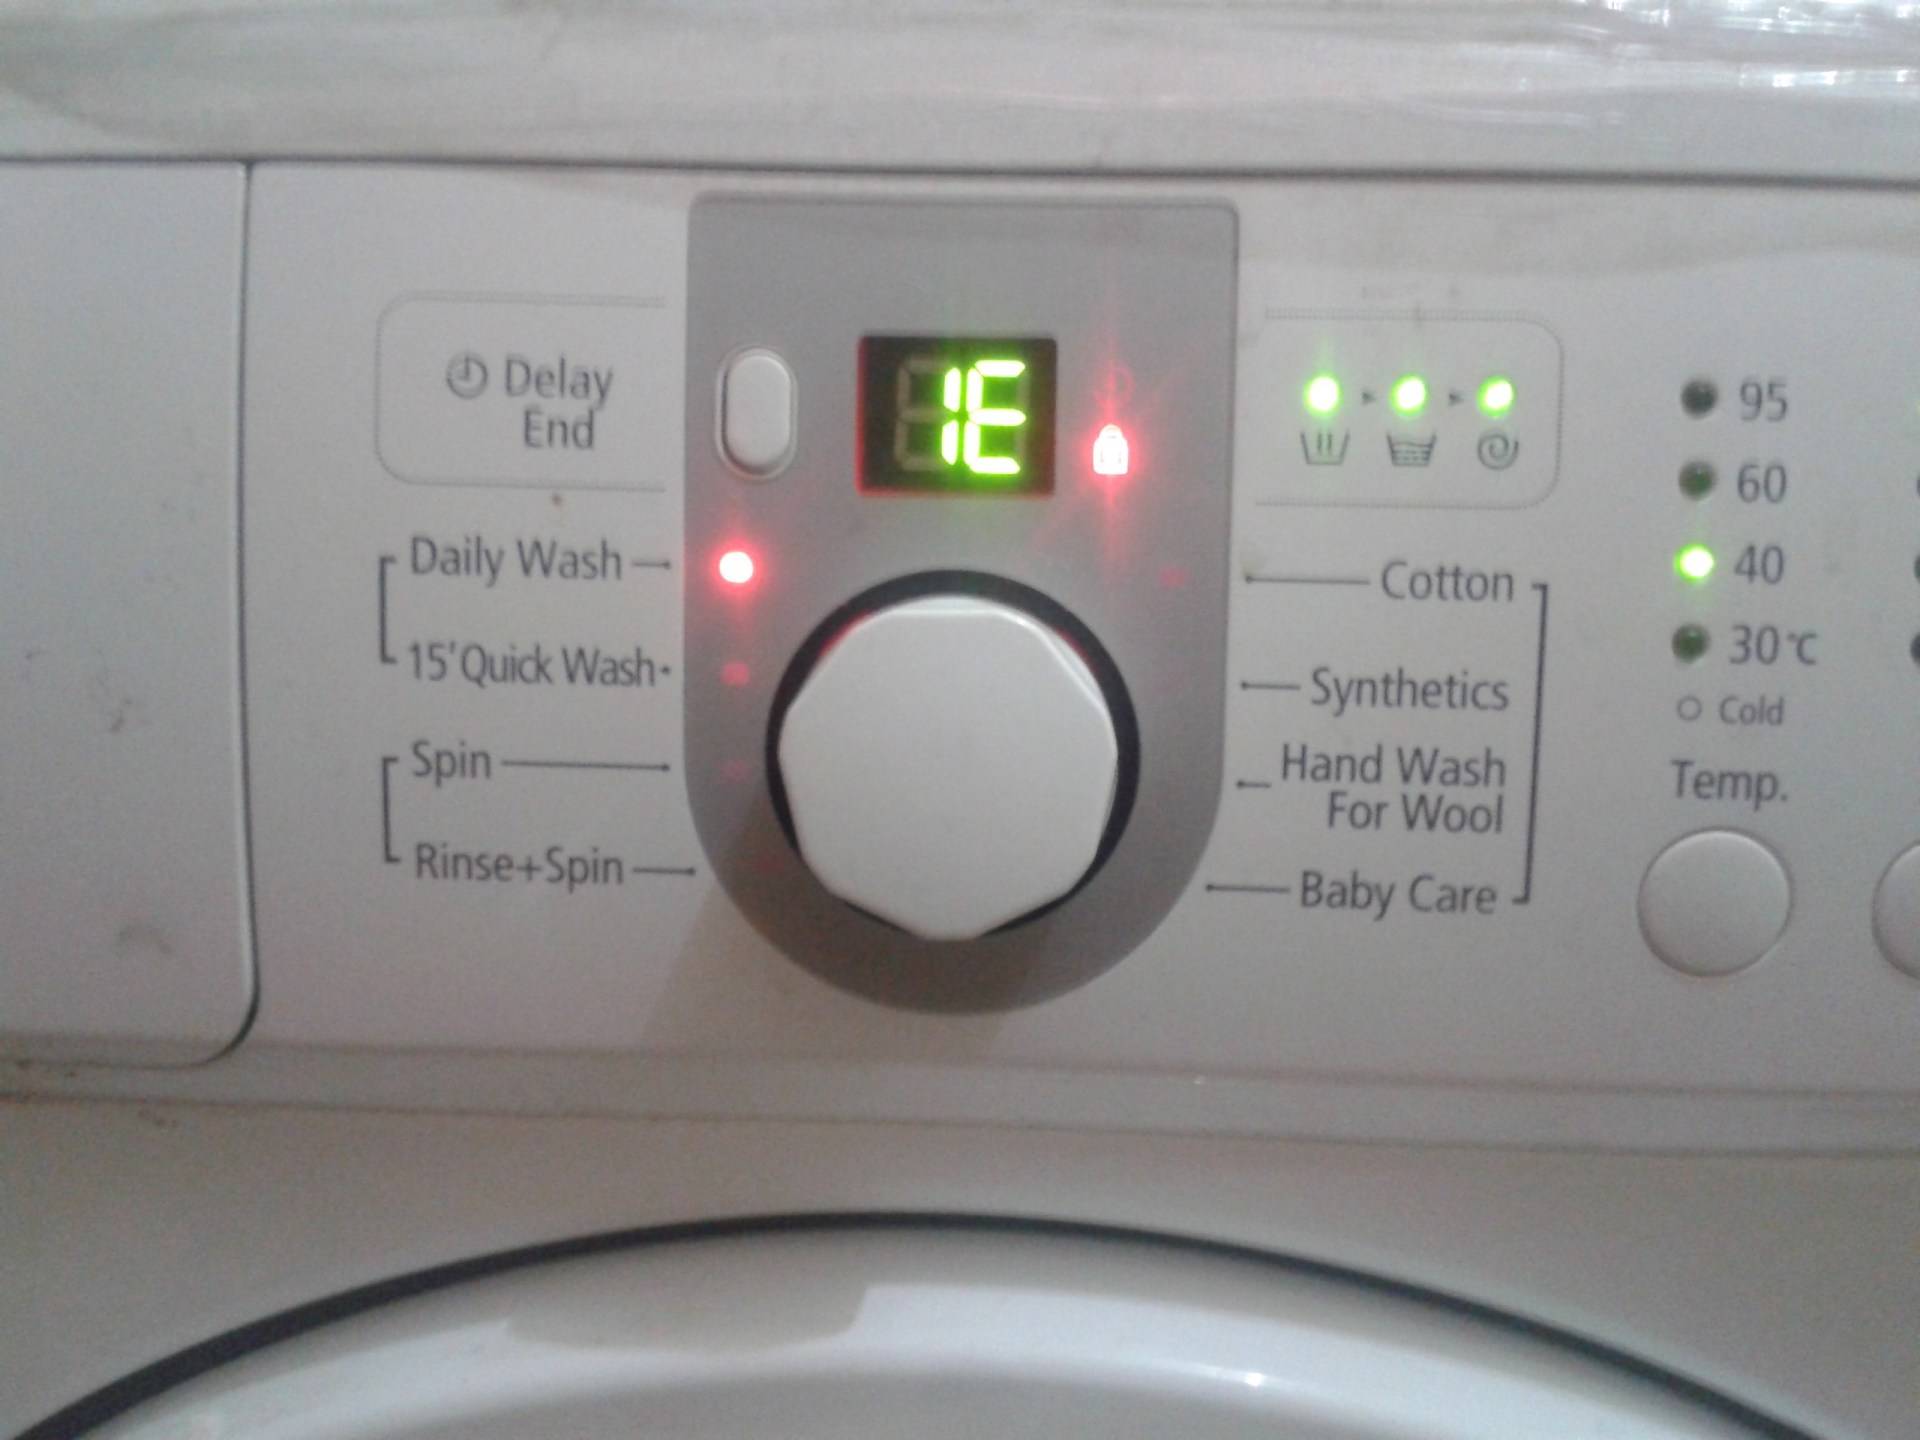 Ошибка dhe на стиральной машине lg - что делать